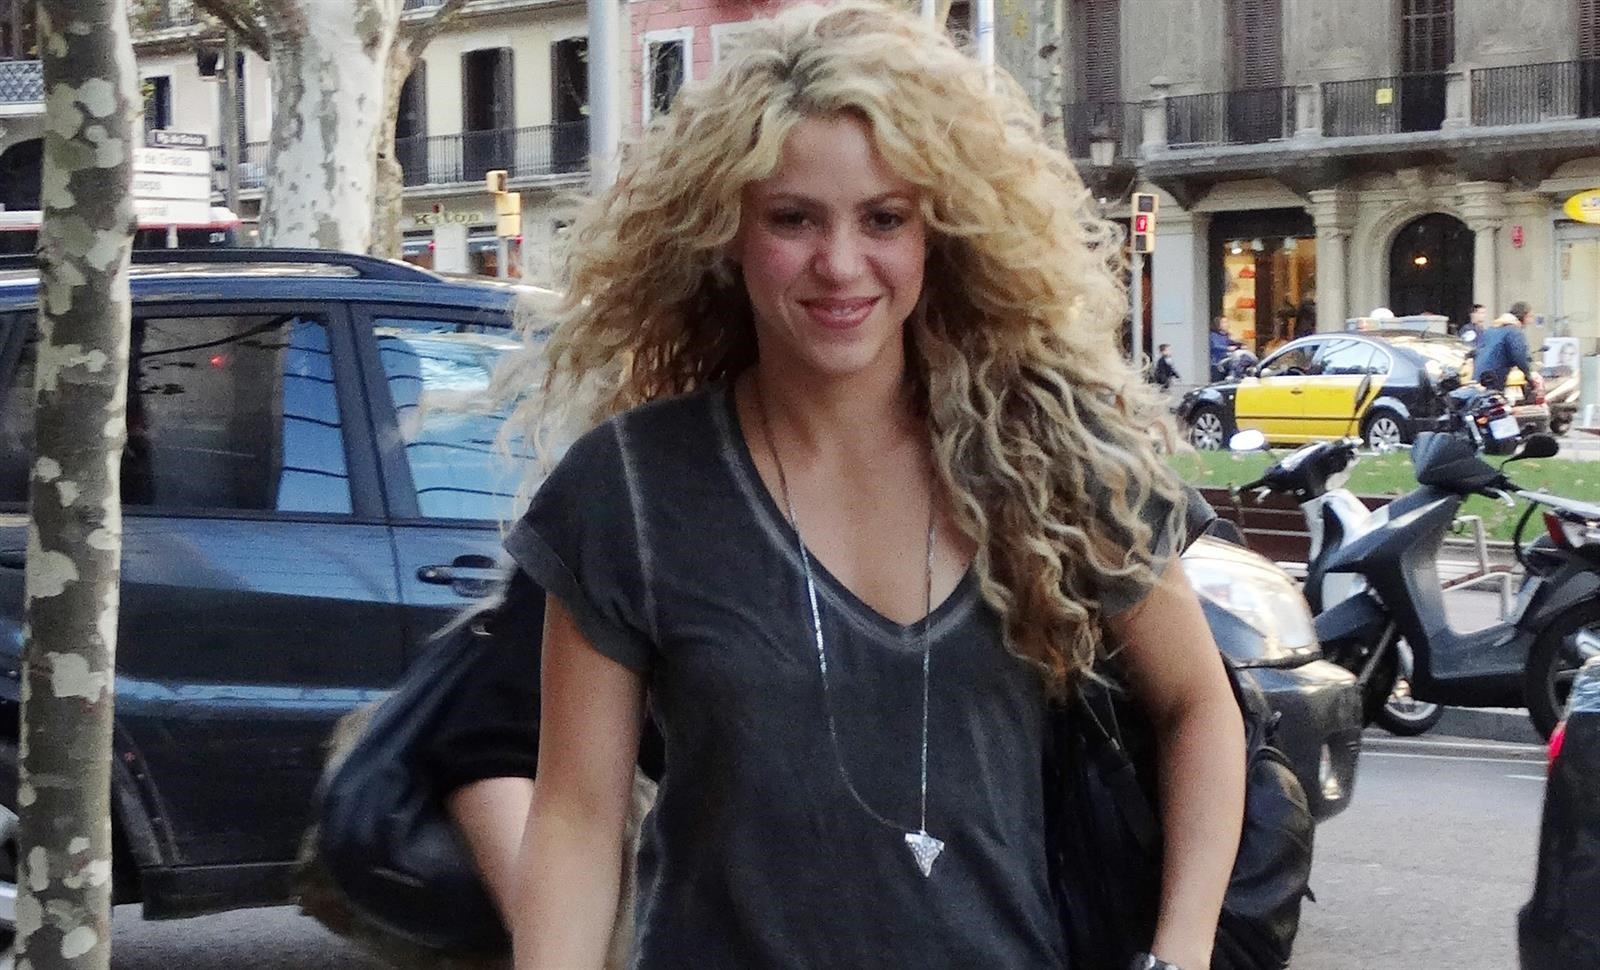 El coautor de la canción de Shakira asegura que quitaron frases "muy fuertes"